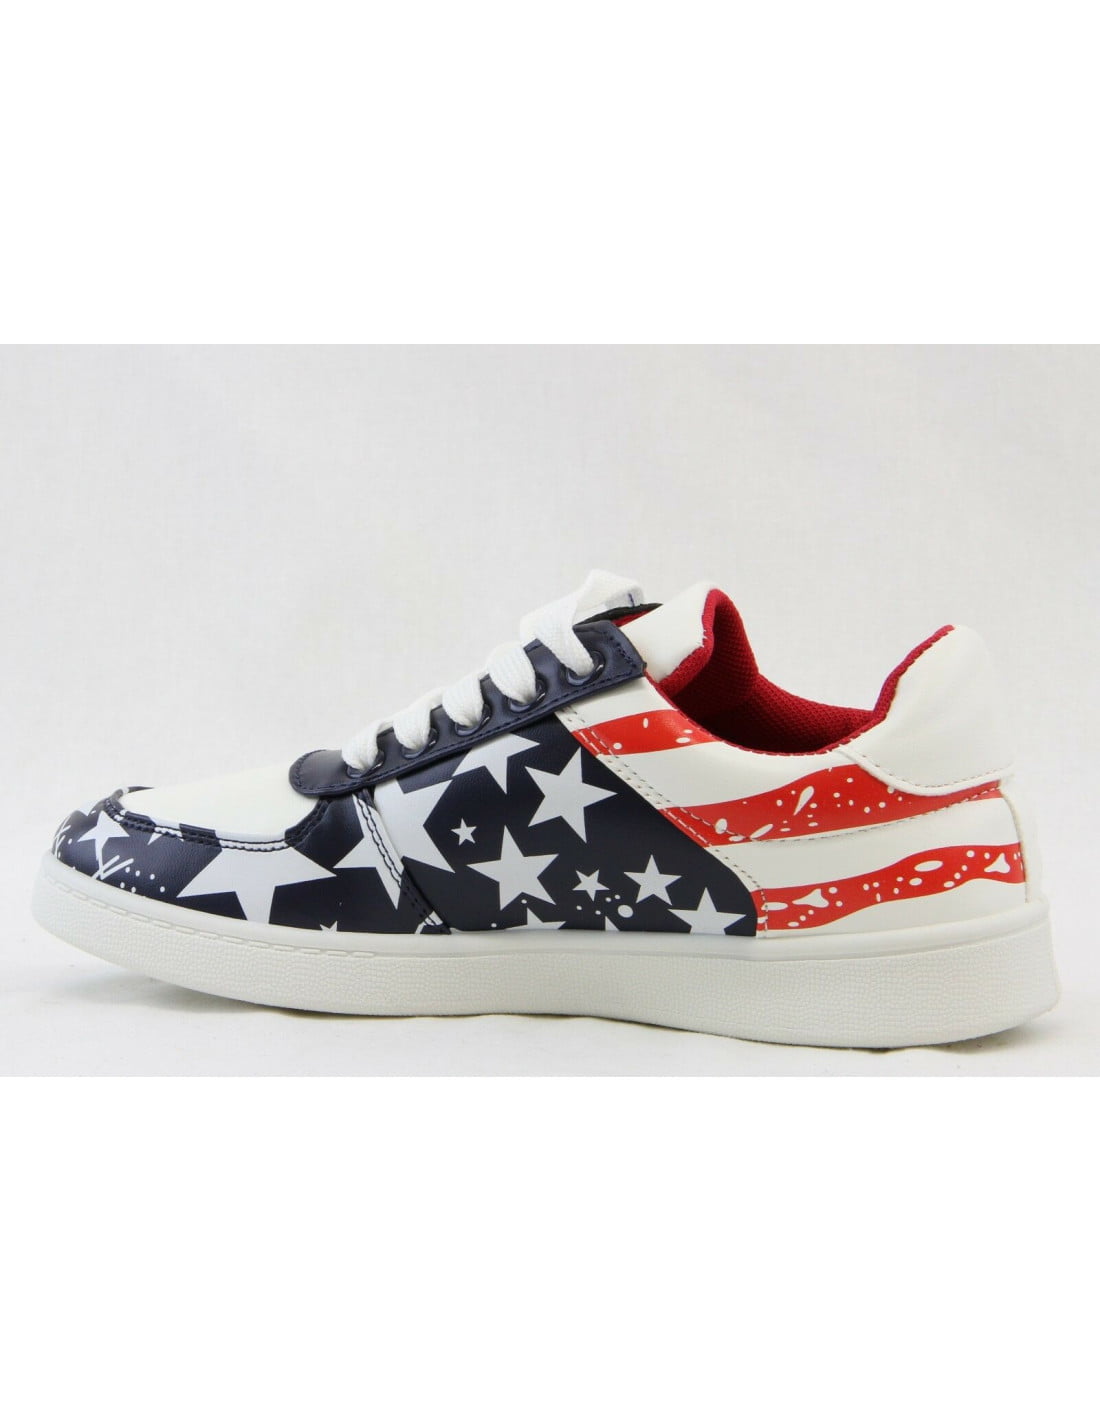 Women Sneaker Comfort Lightweight Tennis Shoes USA Flag